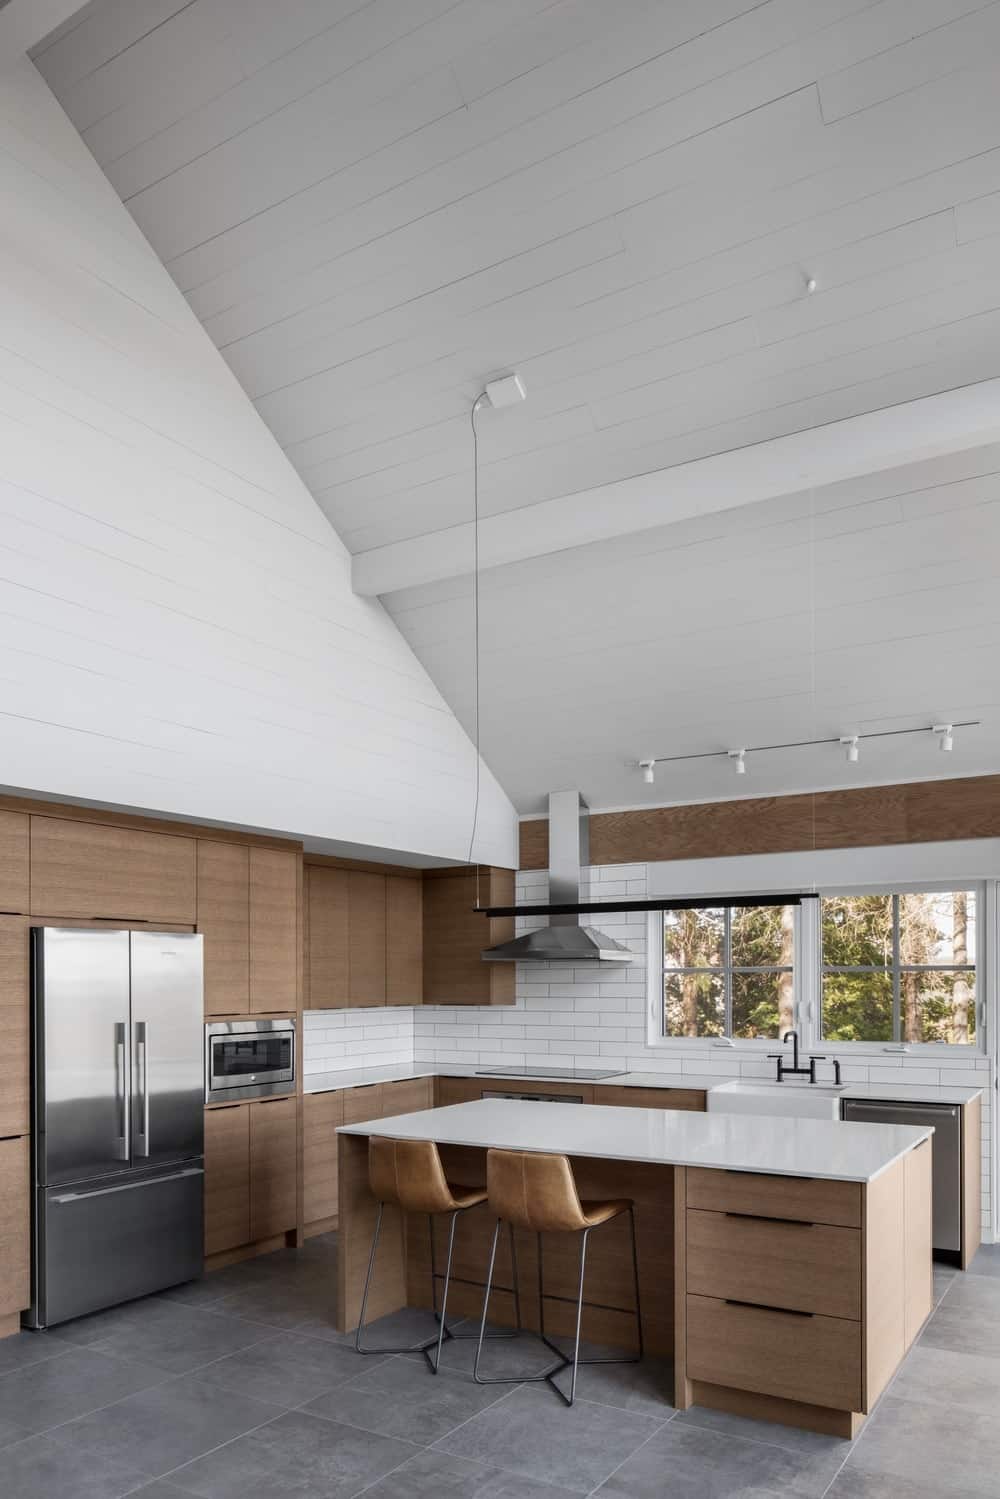 这种设计的简单性使我们感到困惑。其原始的白色台面与普通的有机木材搭配，是俯瞰高大绿色树木的厨房的终极选择。此外，将高端屋顶漆成完全白色，使这个地方看起来更加开放，并将人们的注意力集中在厨房上。